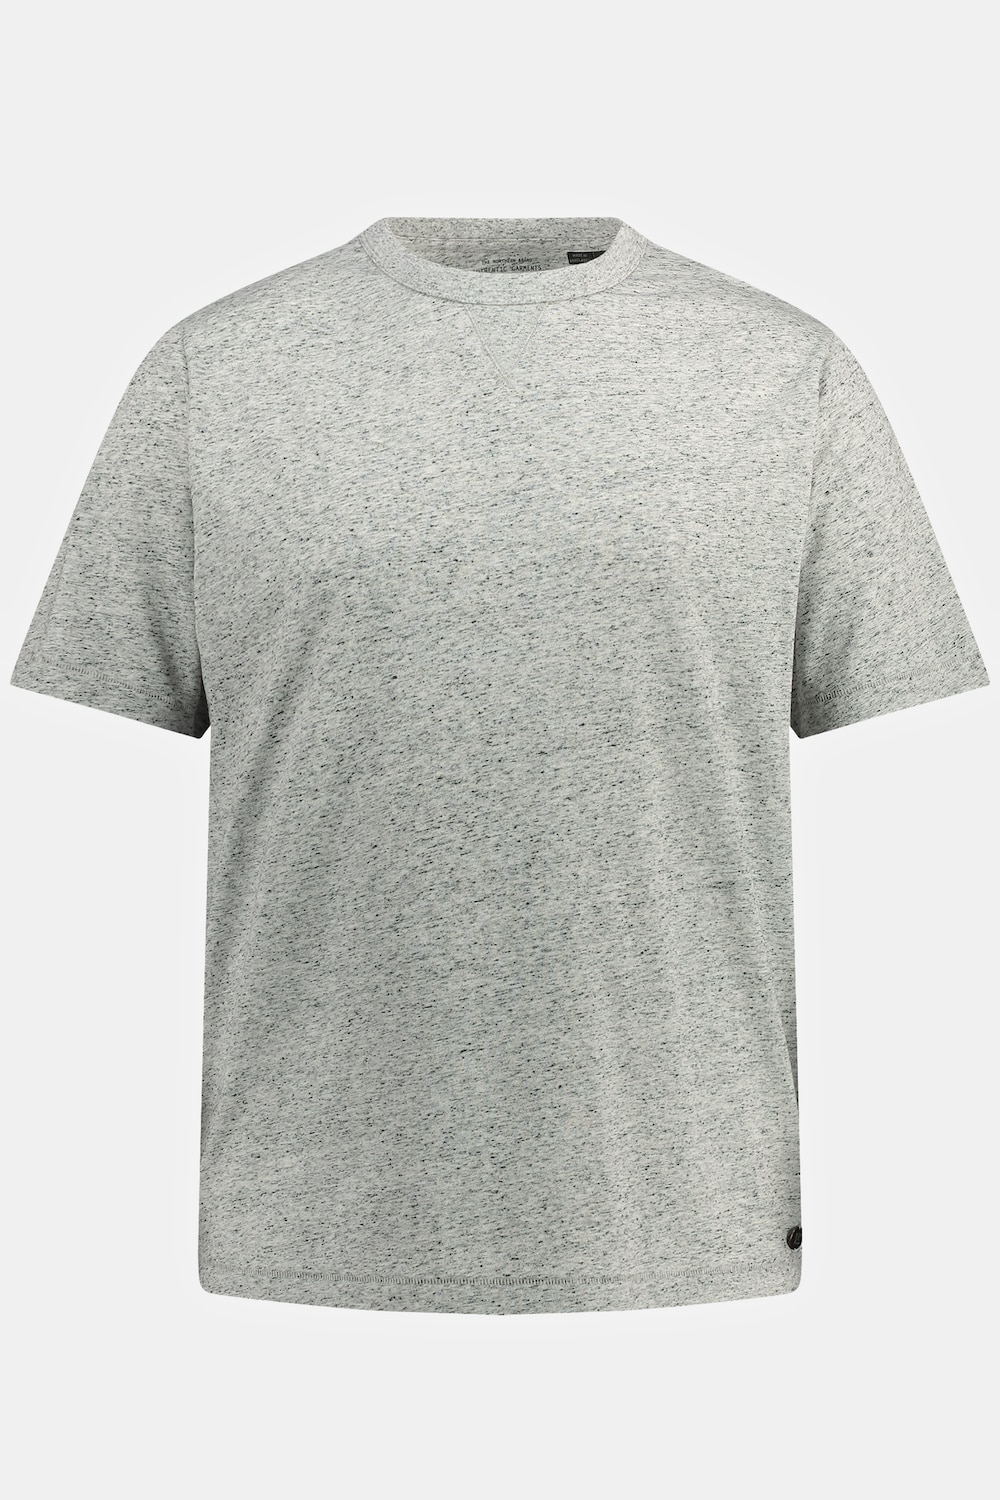 Grote Maten T-shirt, Heren, grijs, Maat: L, Polyester/Linnen, JP1880